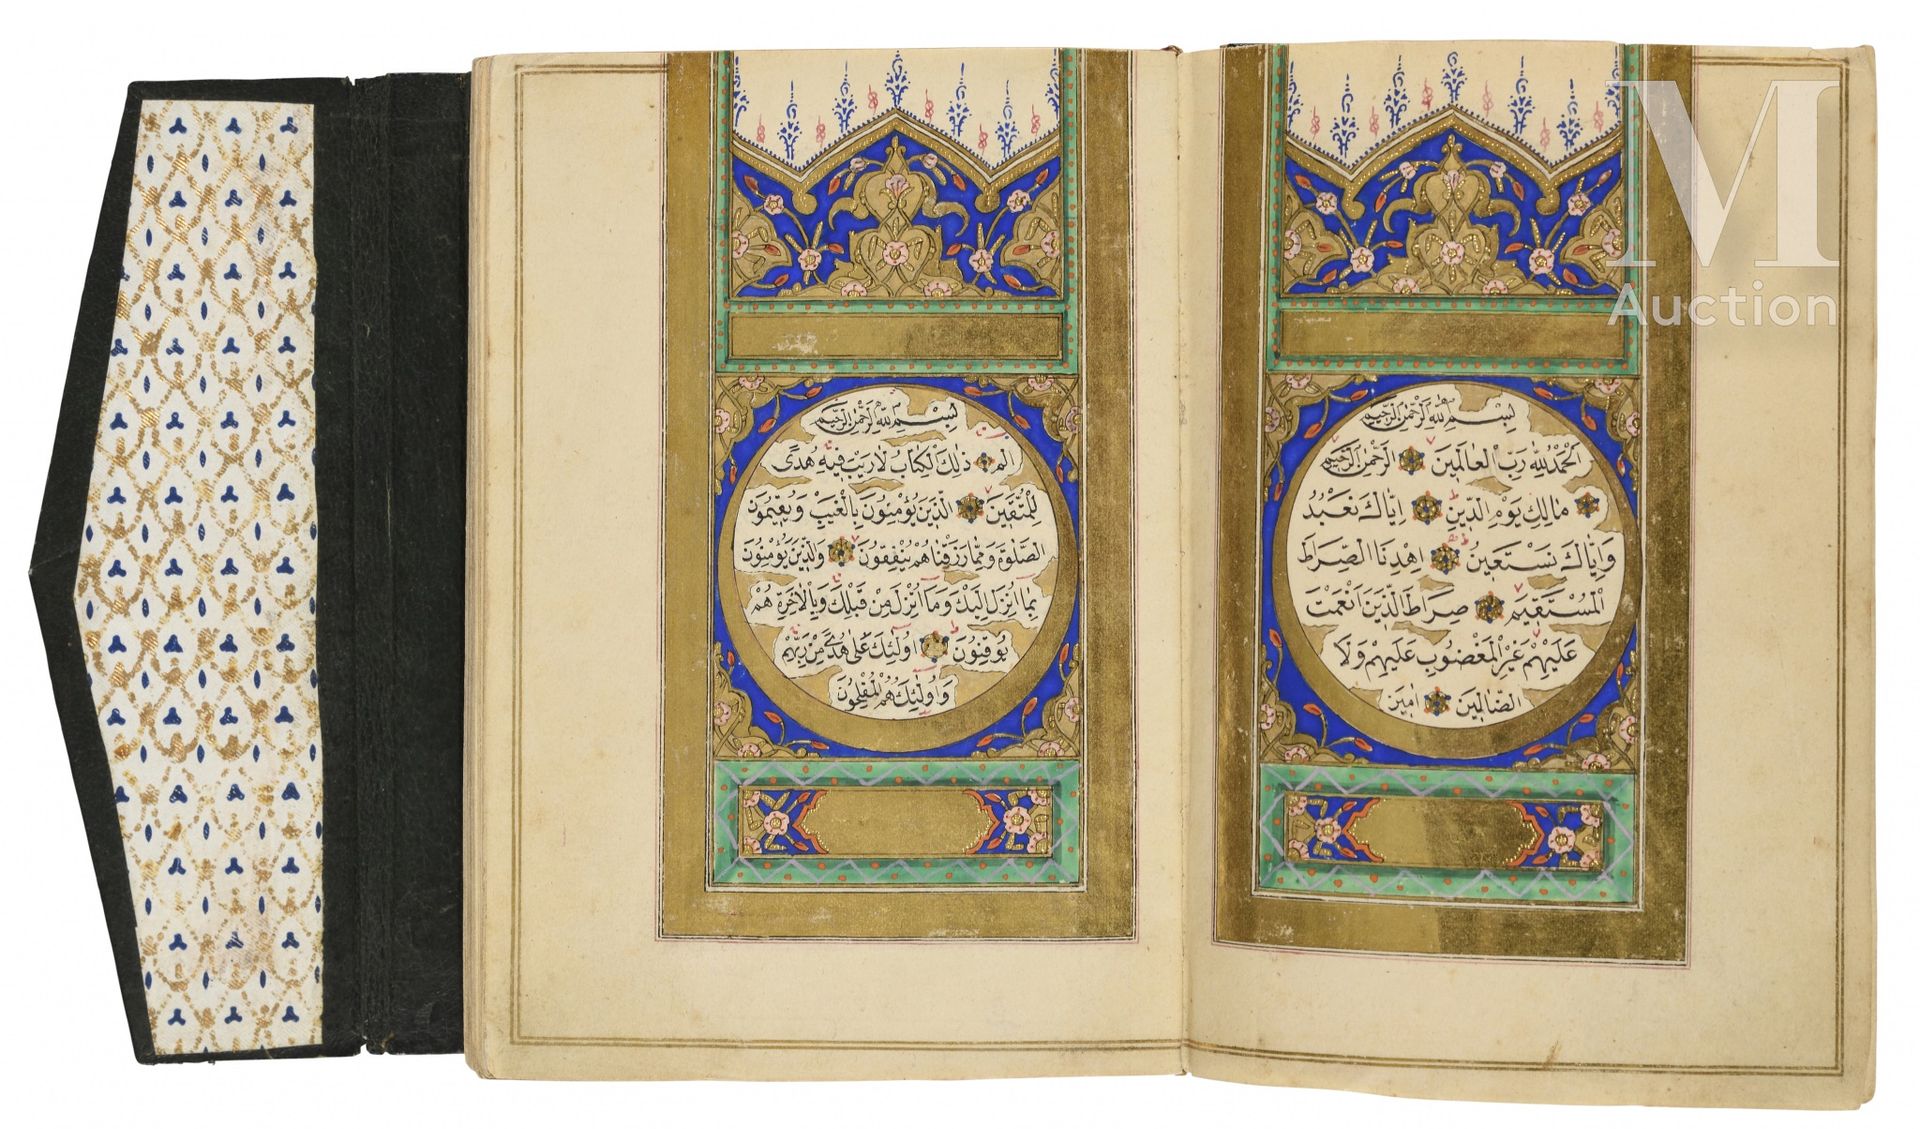 Coran d'époque ottomane Von 'Ali Al-Khulusi

Türkei, datiert 1279H. ('''=1862) 
&hellip;